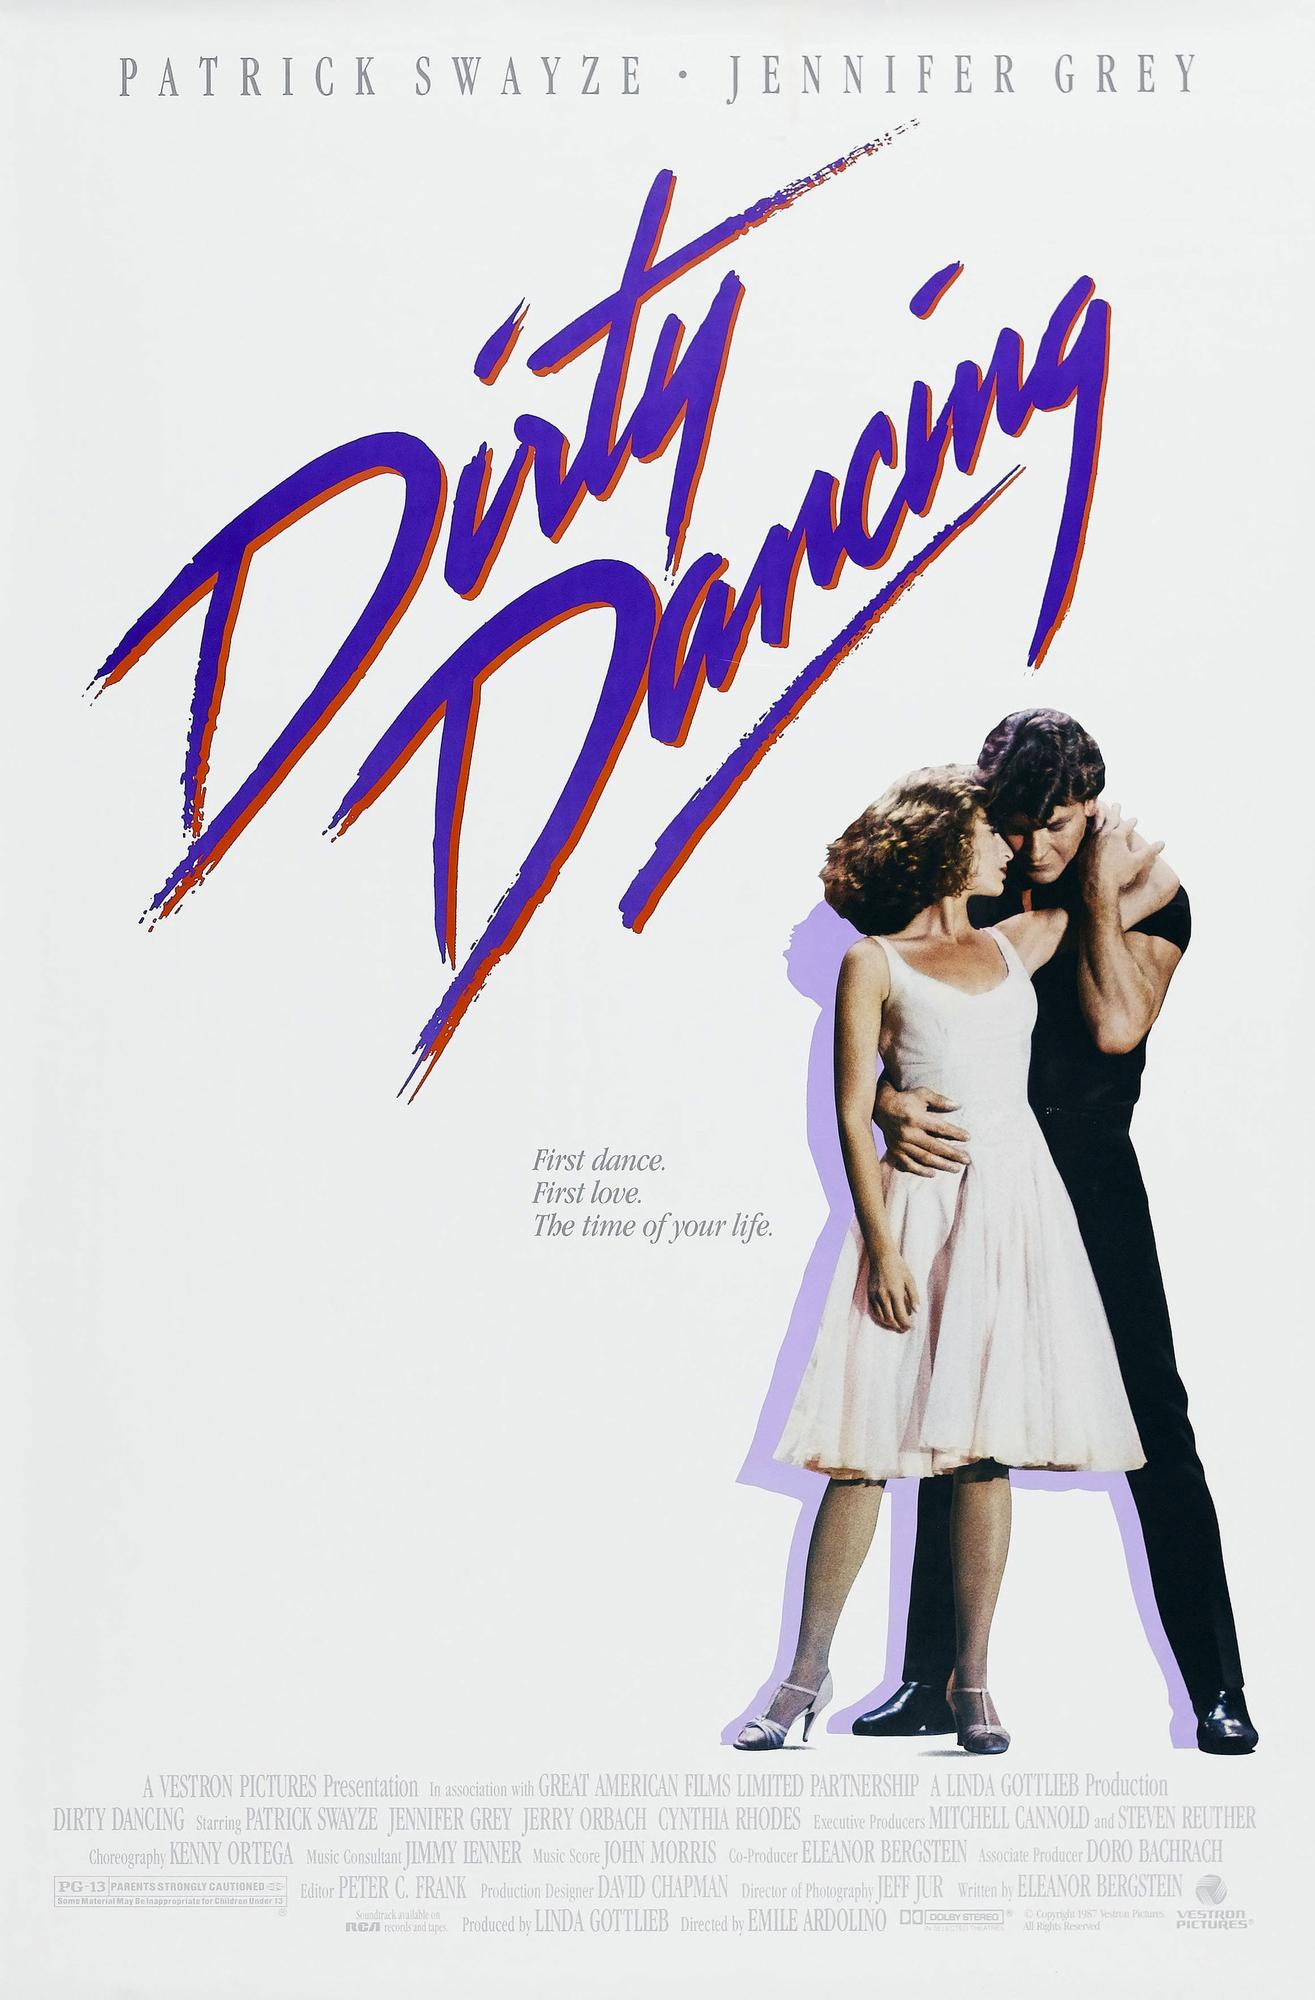 Affiche du film "Dirty Dancing" de 1987 avec Jennifer Grey et Patrick Swayze. [AFP - Archives du 7eme Art]